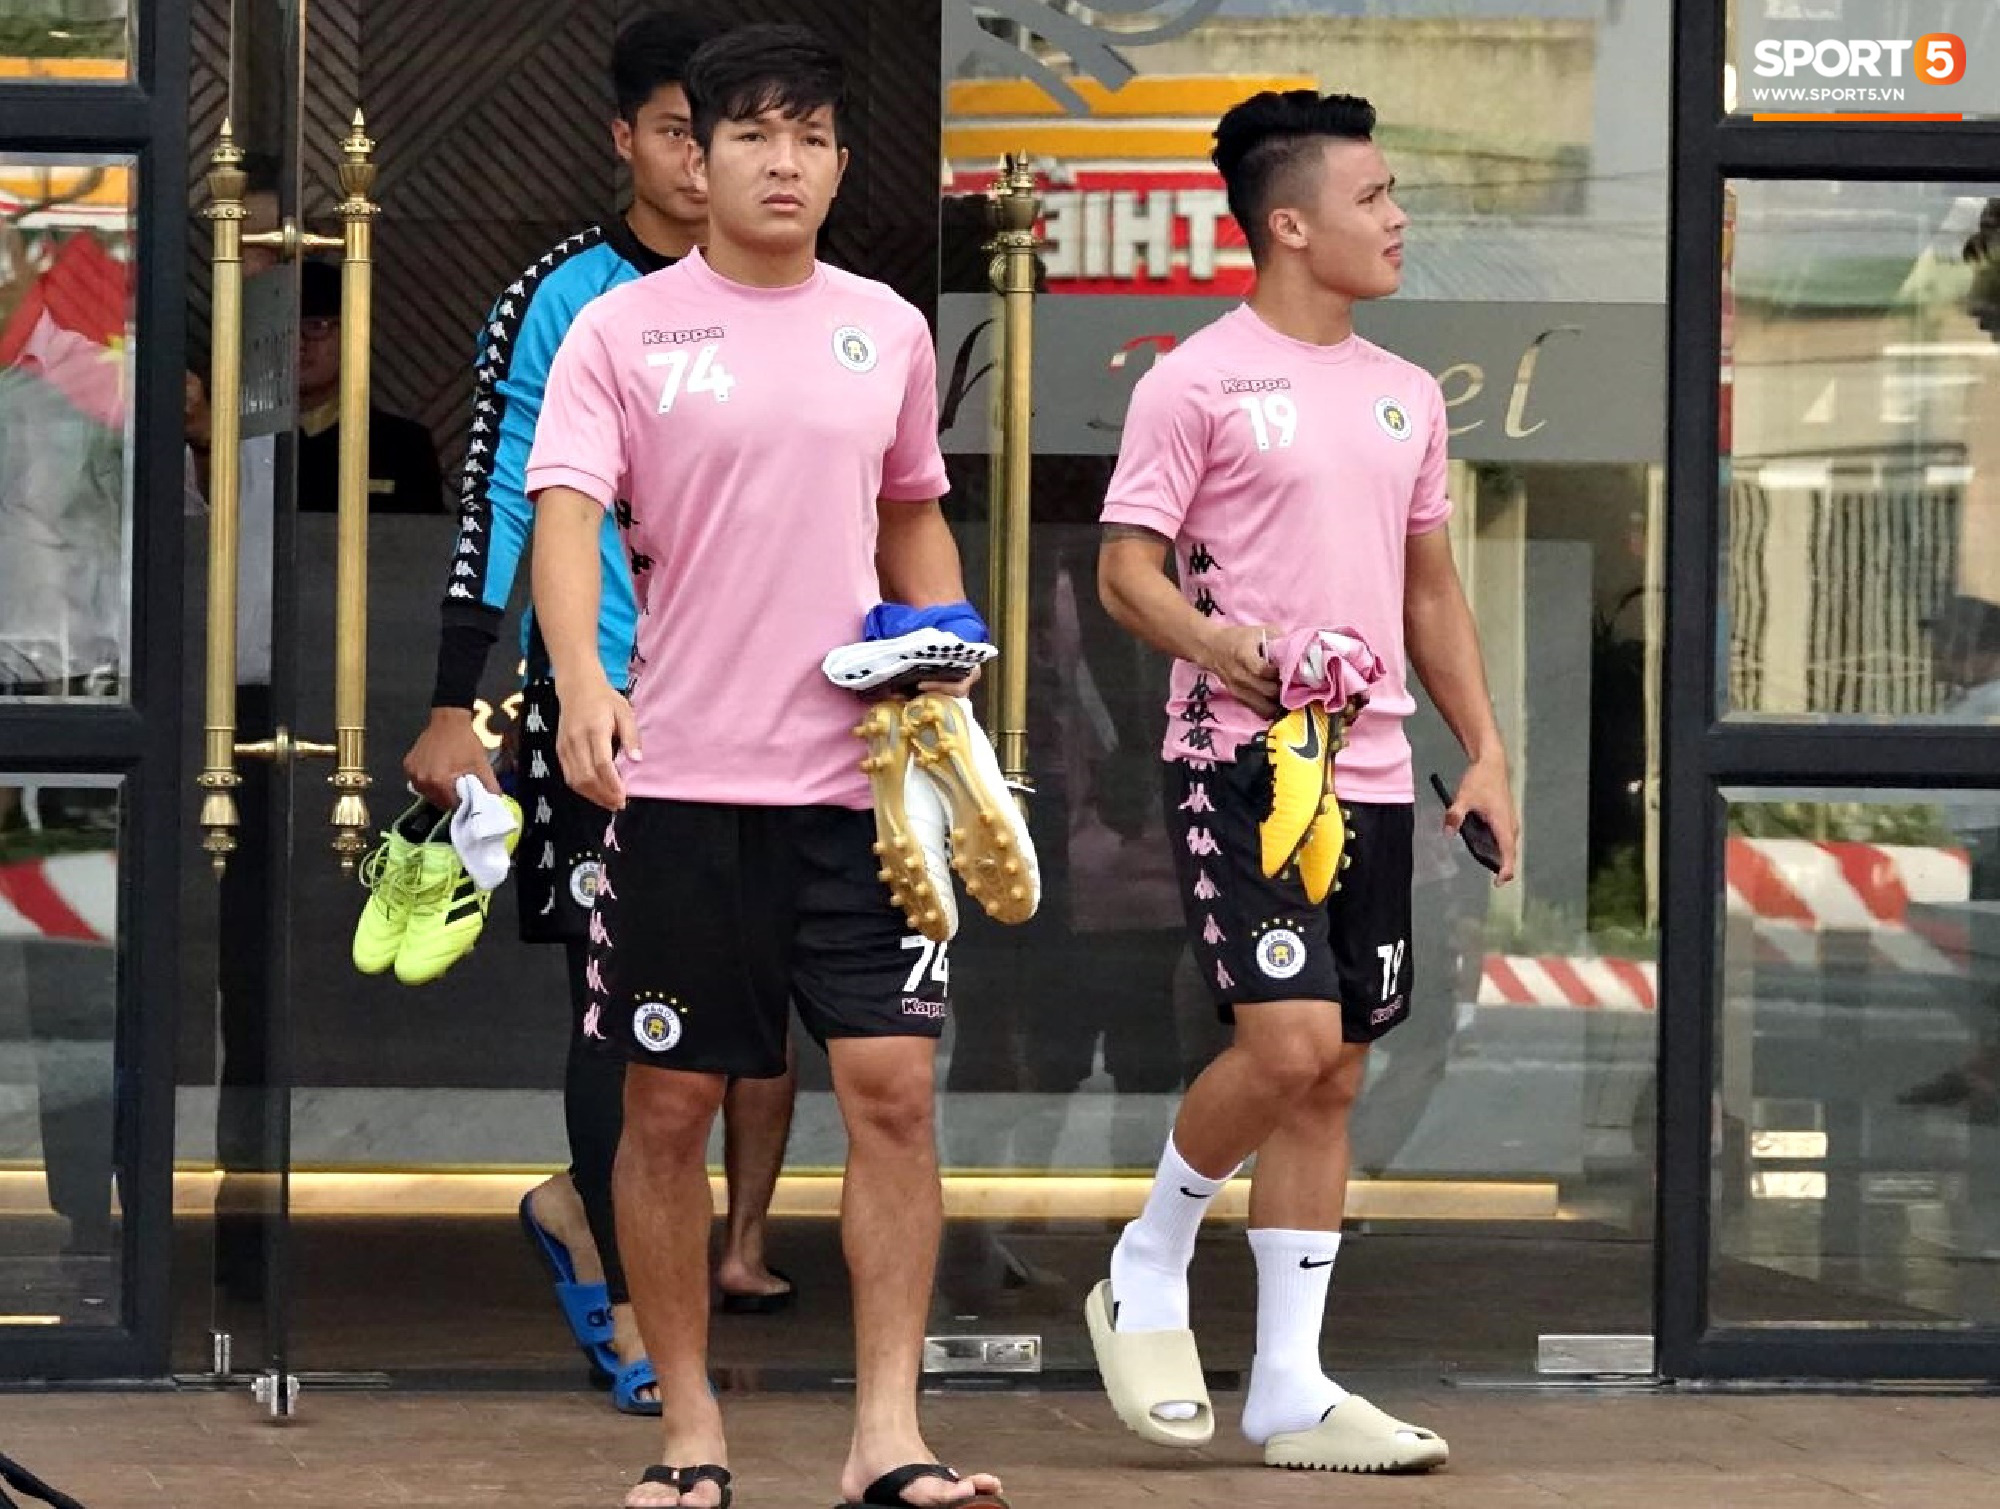 HLV trưởng Hà Nội FC: Quang Hải có thể bị xáo trộn tâm lý nhưng đội bóng sẽ bảo vệ cậu ấy - Ảnh 1.